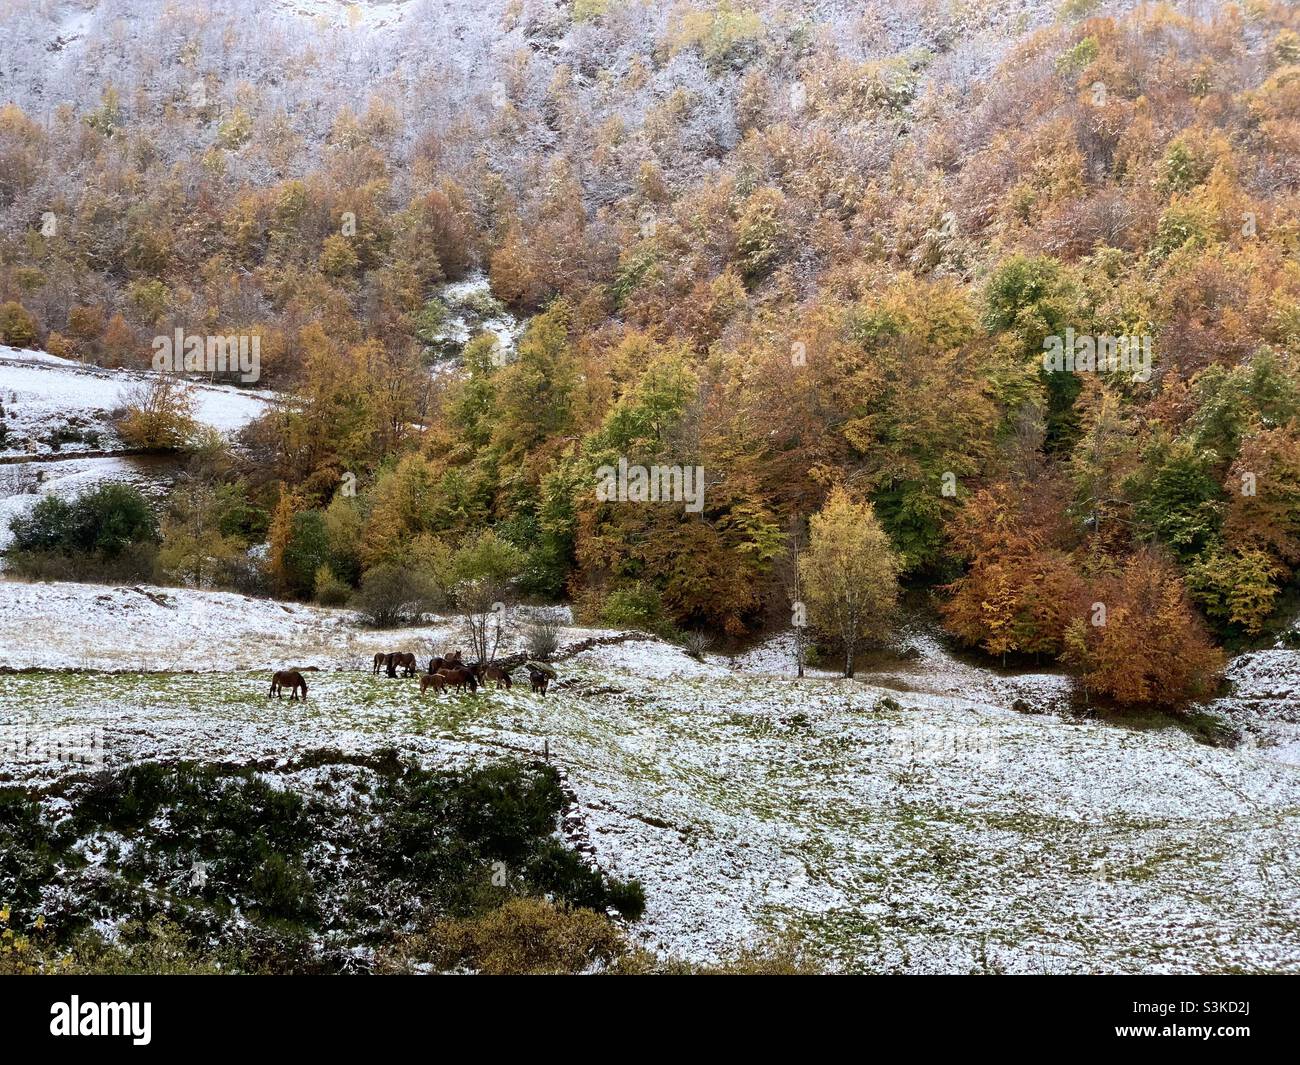 Scène d'automne avec des chevaux sauvages et de la neige dans le parc naturel de Somiedo, dans les montagnes des Asturies, en Espagne. Banque D'Images